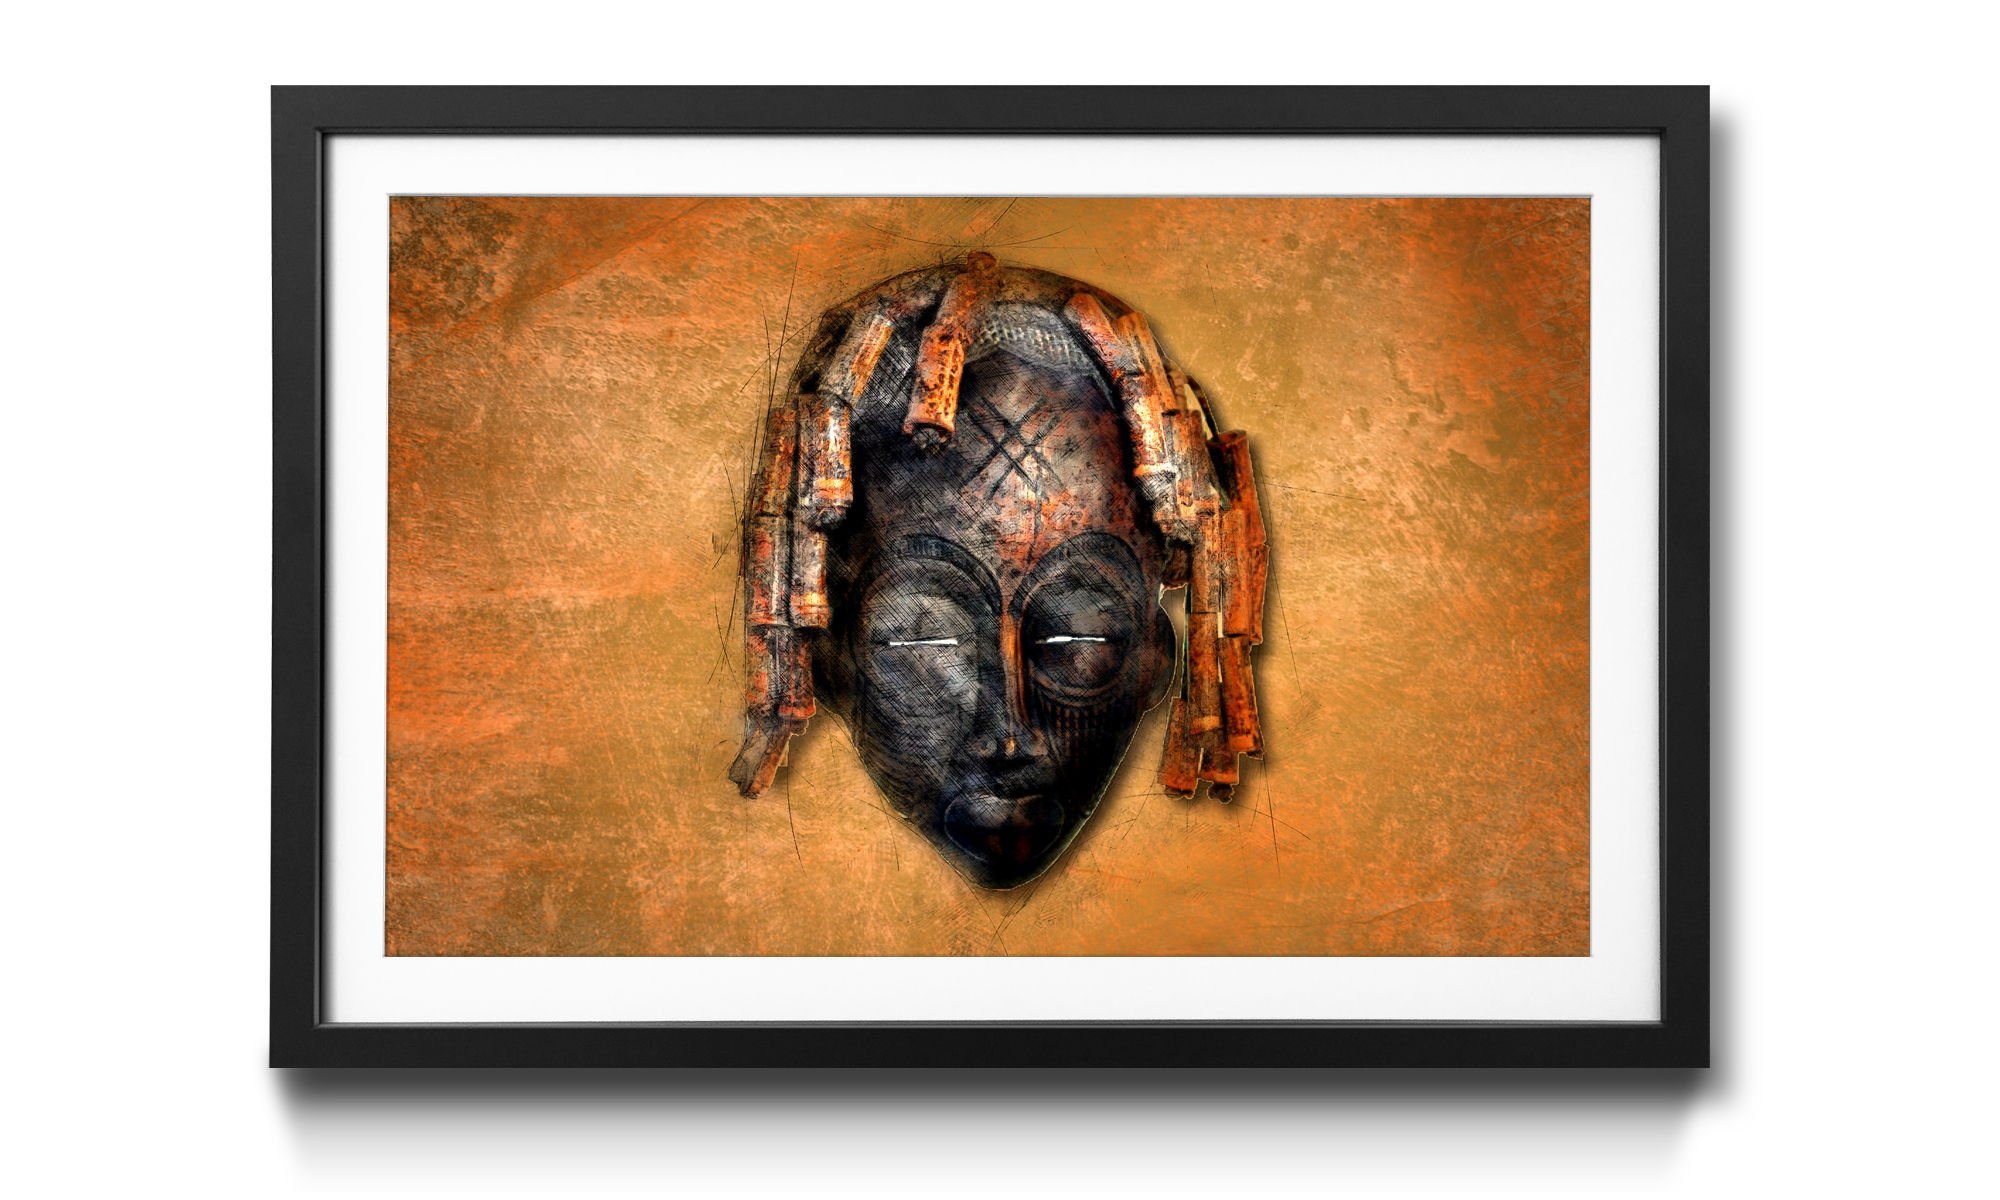 Black Afrikanische 4 mit Wandbild, Rahmen in WandbilderXXL Face, Maske, Größen Bild erhältlich